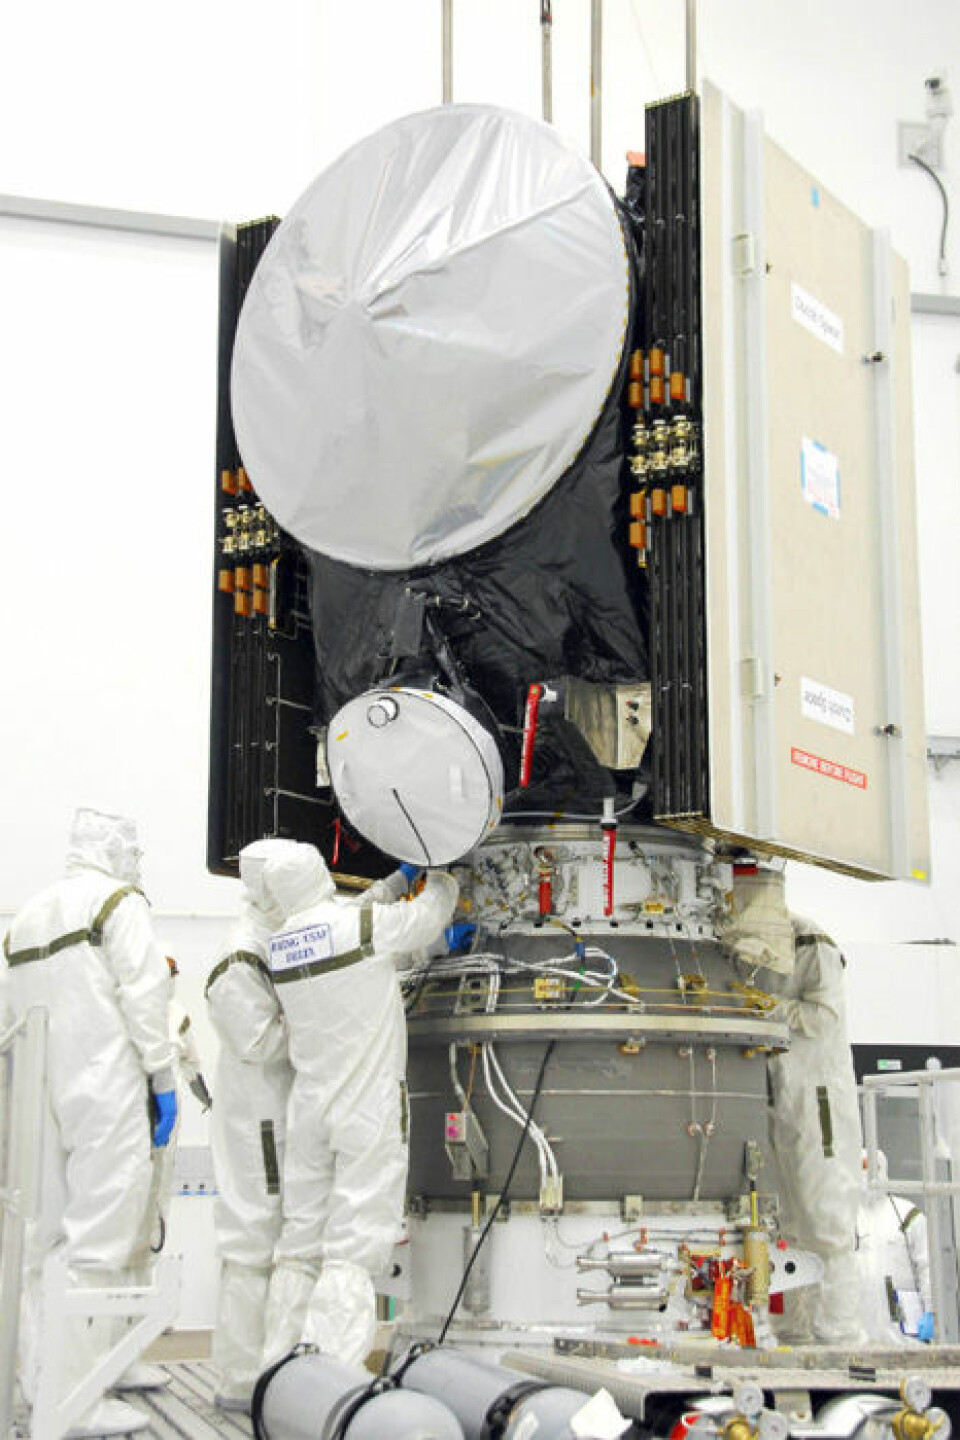 Montering og klargjøringen av Dawn på festeplatformen for det øverste og tredje trinnet av bæreraketten som sendte Dawn ut i verdensrommet. (Foto: NASA)